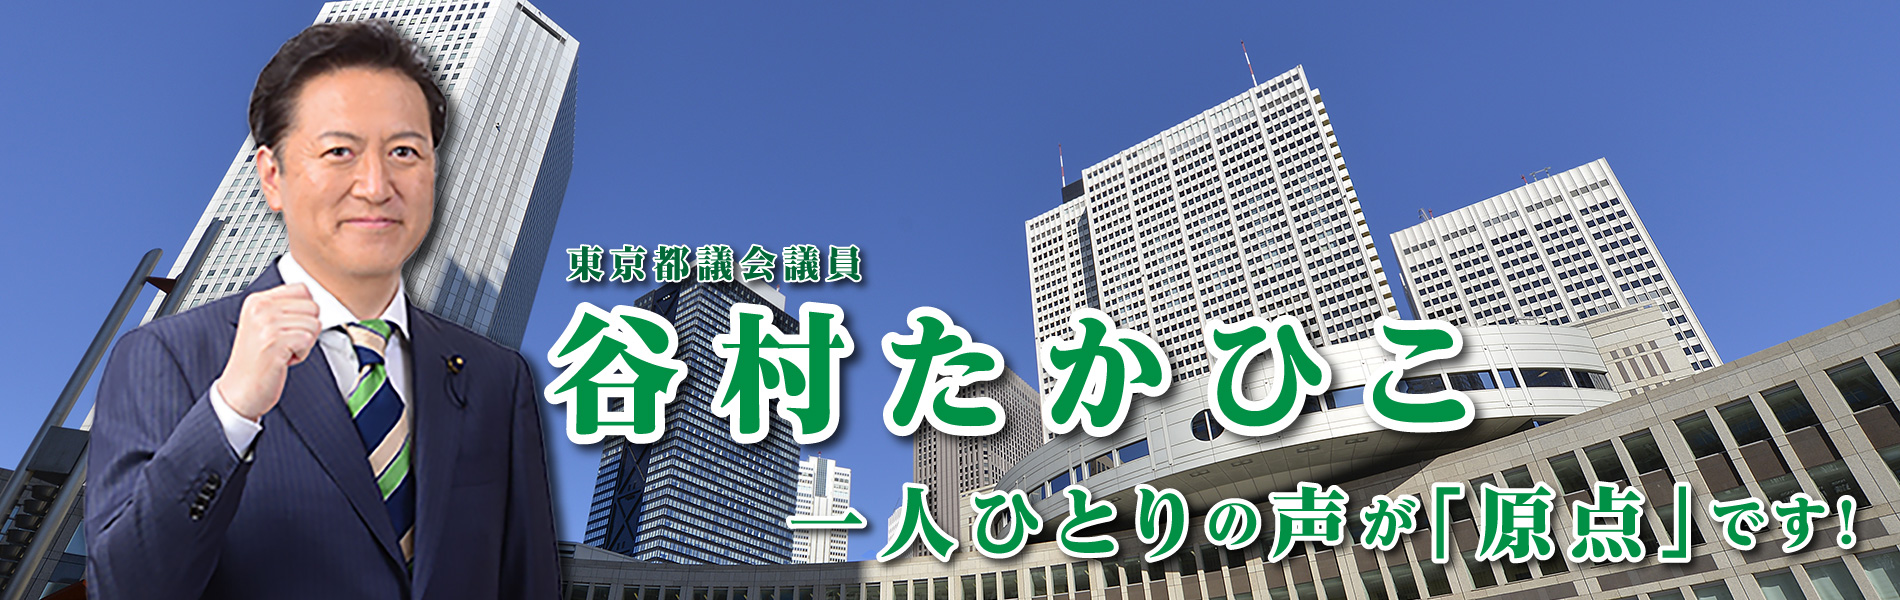 東京都議会議員 谷村たかひこ 東京都議会議員 谷村たかひこ のオフィシャルサイトです